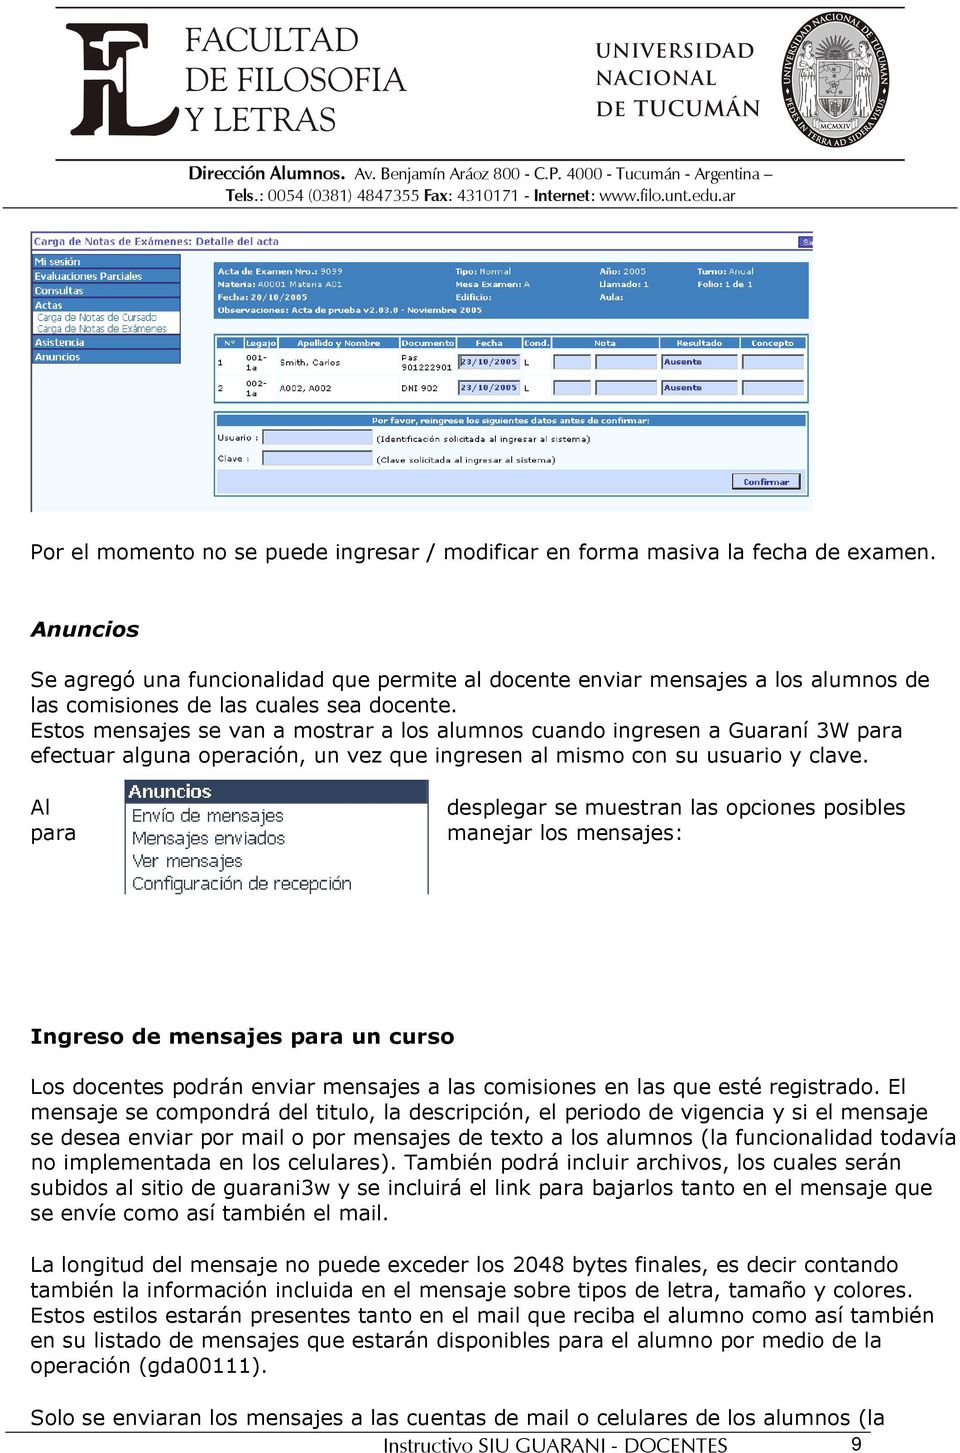 Estos mensajes se van a mostrar a los alumnos cuando ingresen a Guaraní 3W para efectuar alguna operación, un vez que ingresen al mismo con su usuario y clave.